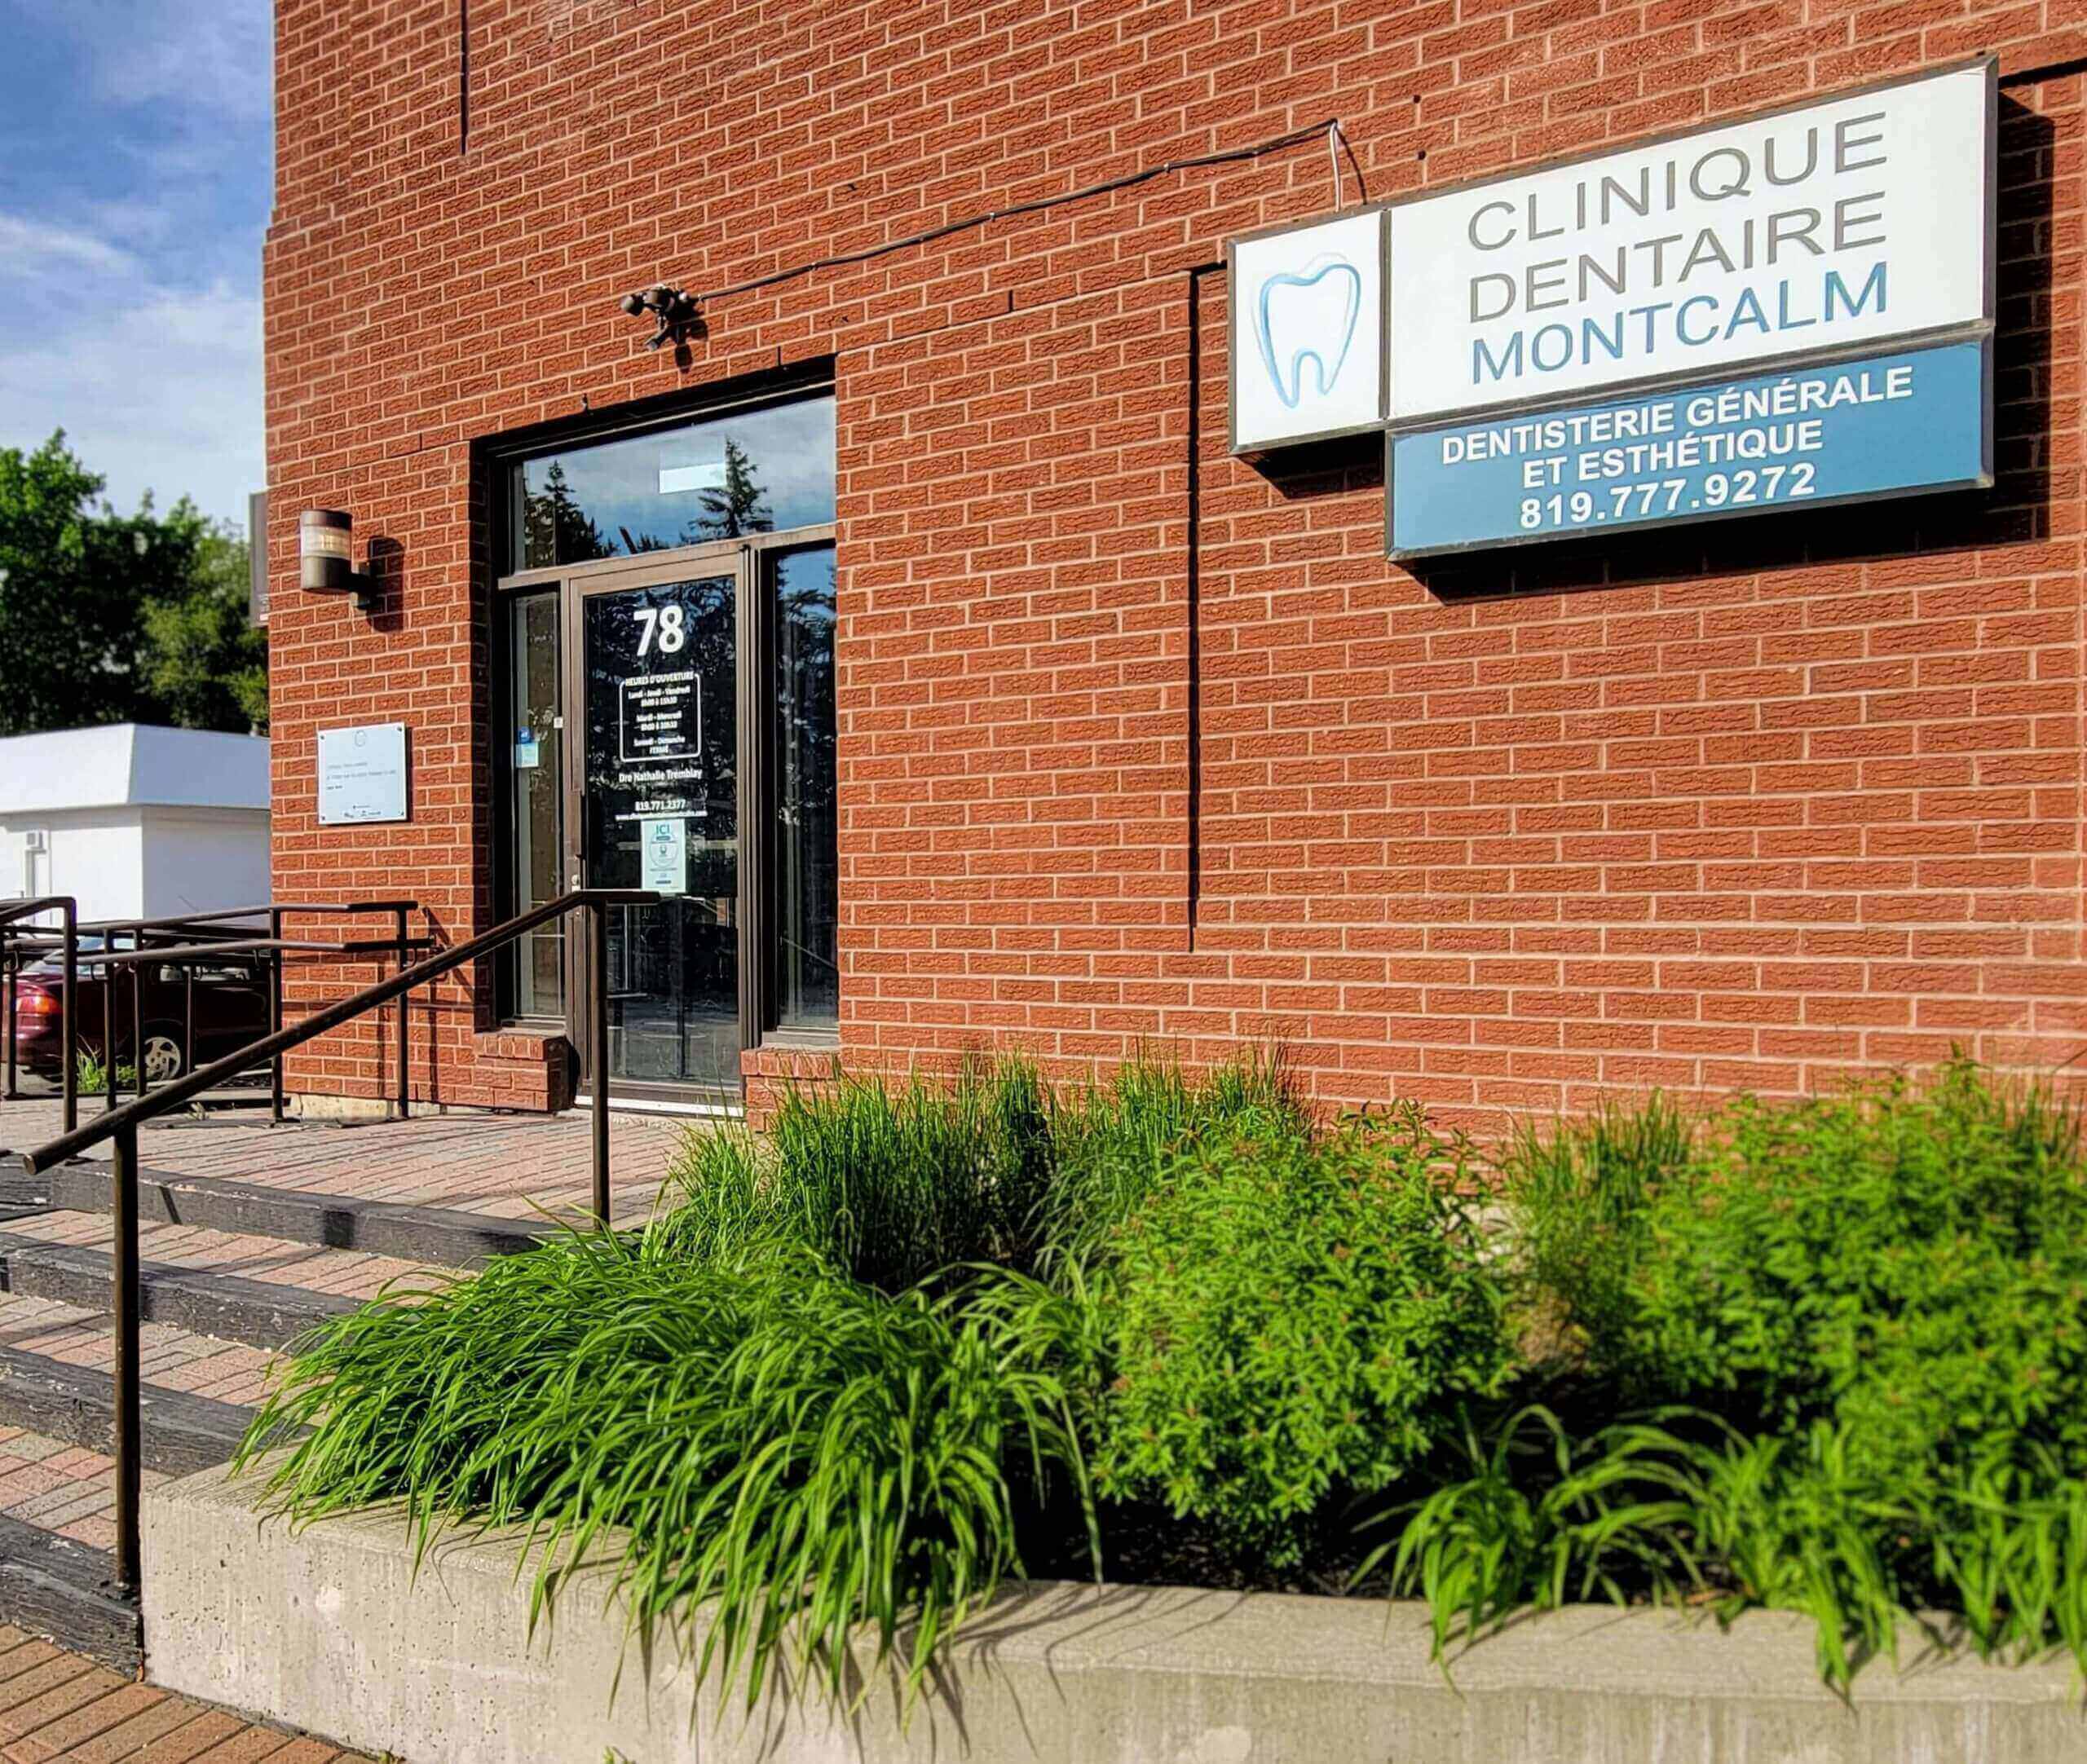 Meilleure clinique dentaire Montcalm